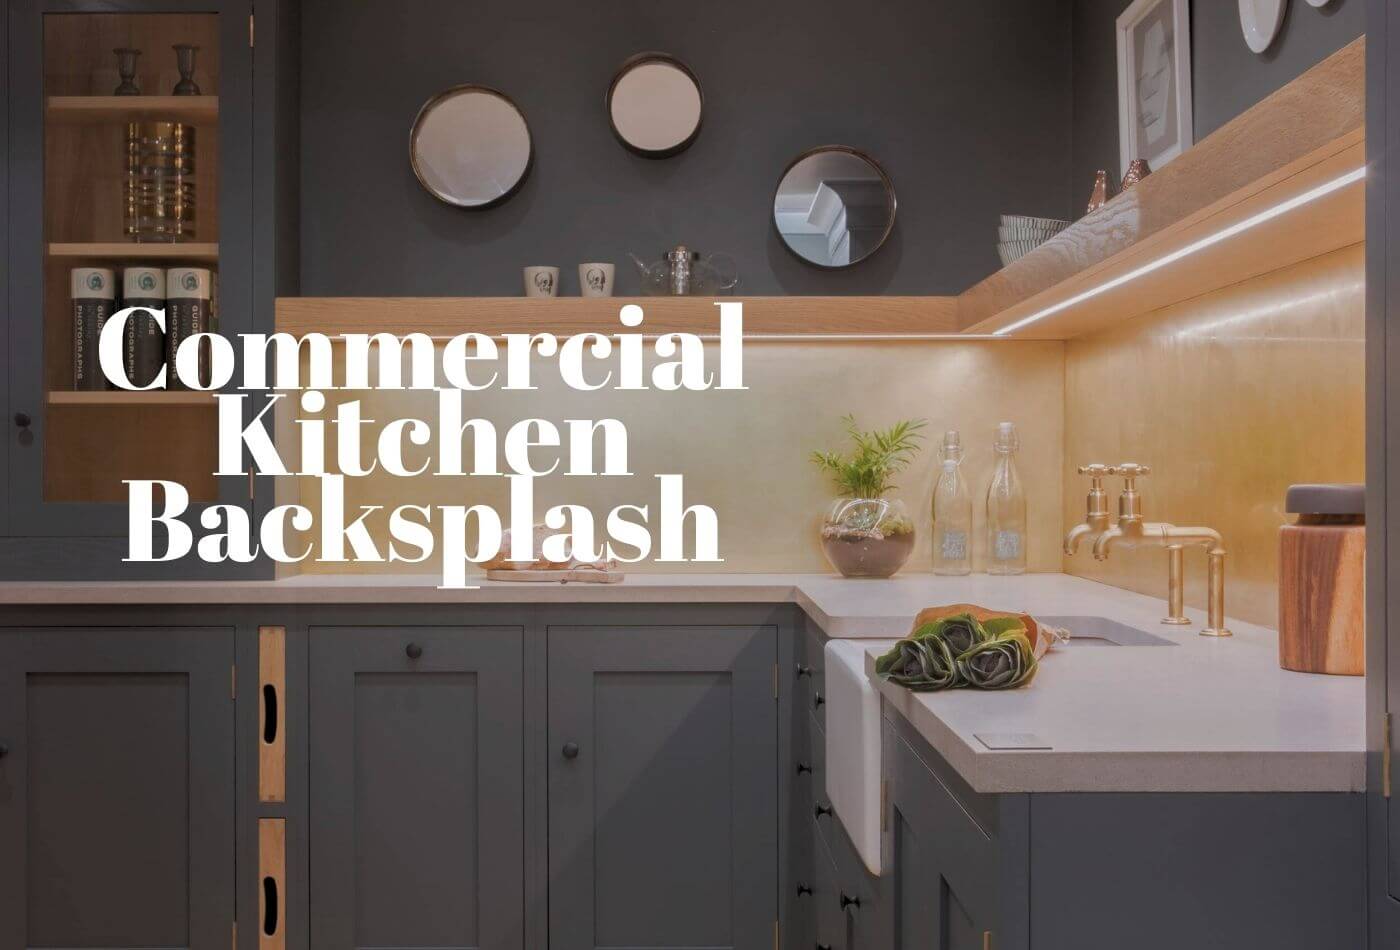 Commercial Kitchen Backsplash With Stylish Ideas